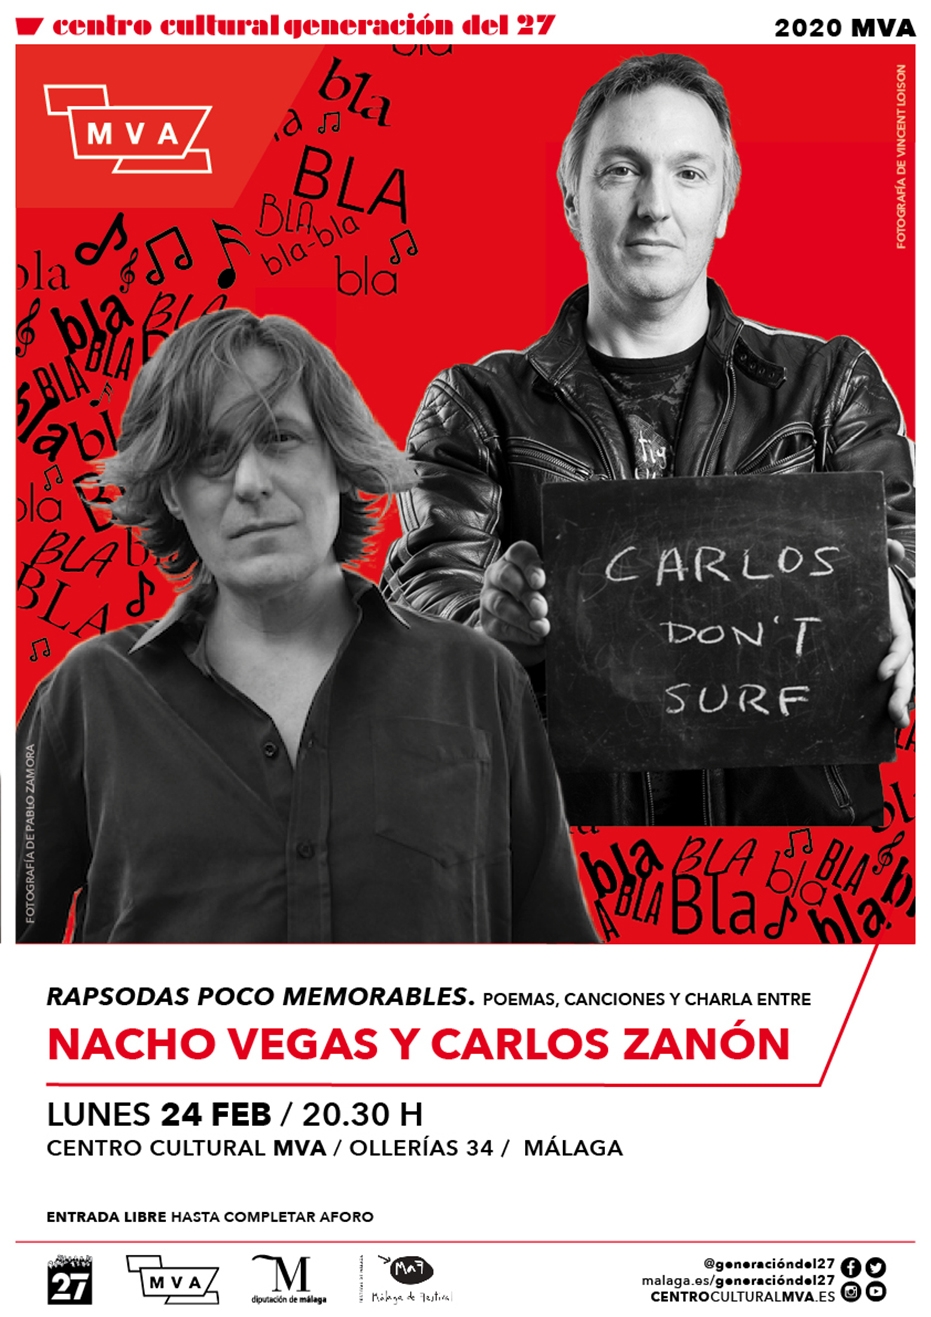 Rapsodas poco memorables. Poemas, canciones y conversación entre Nacho Vegas y Carlos Zanon